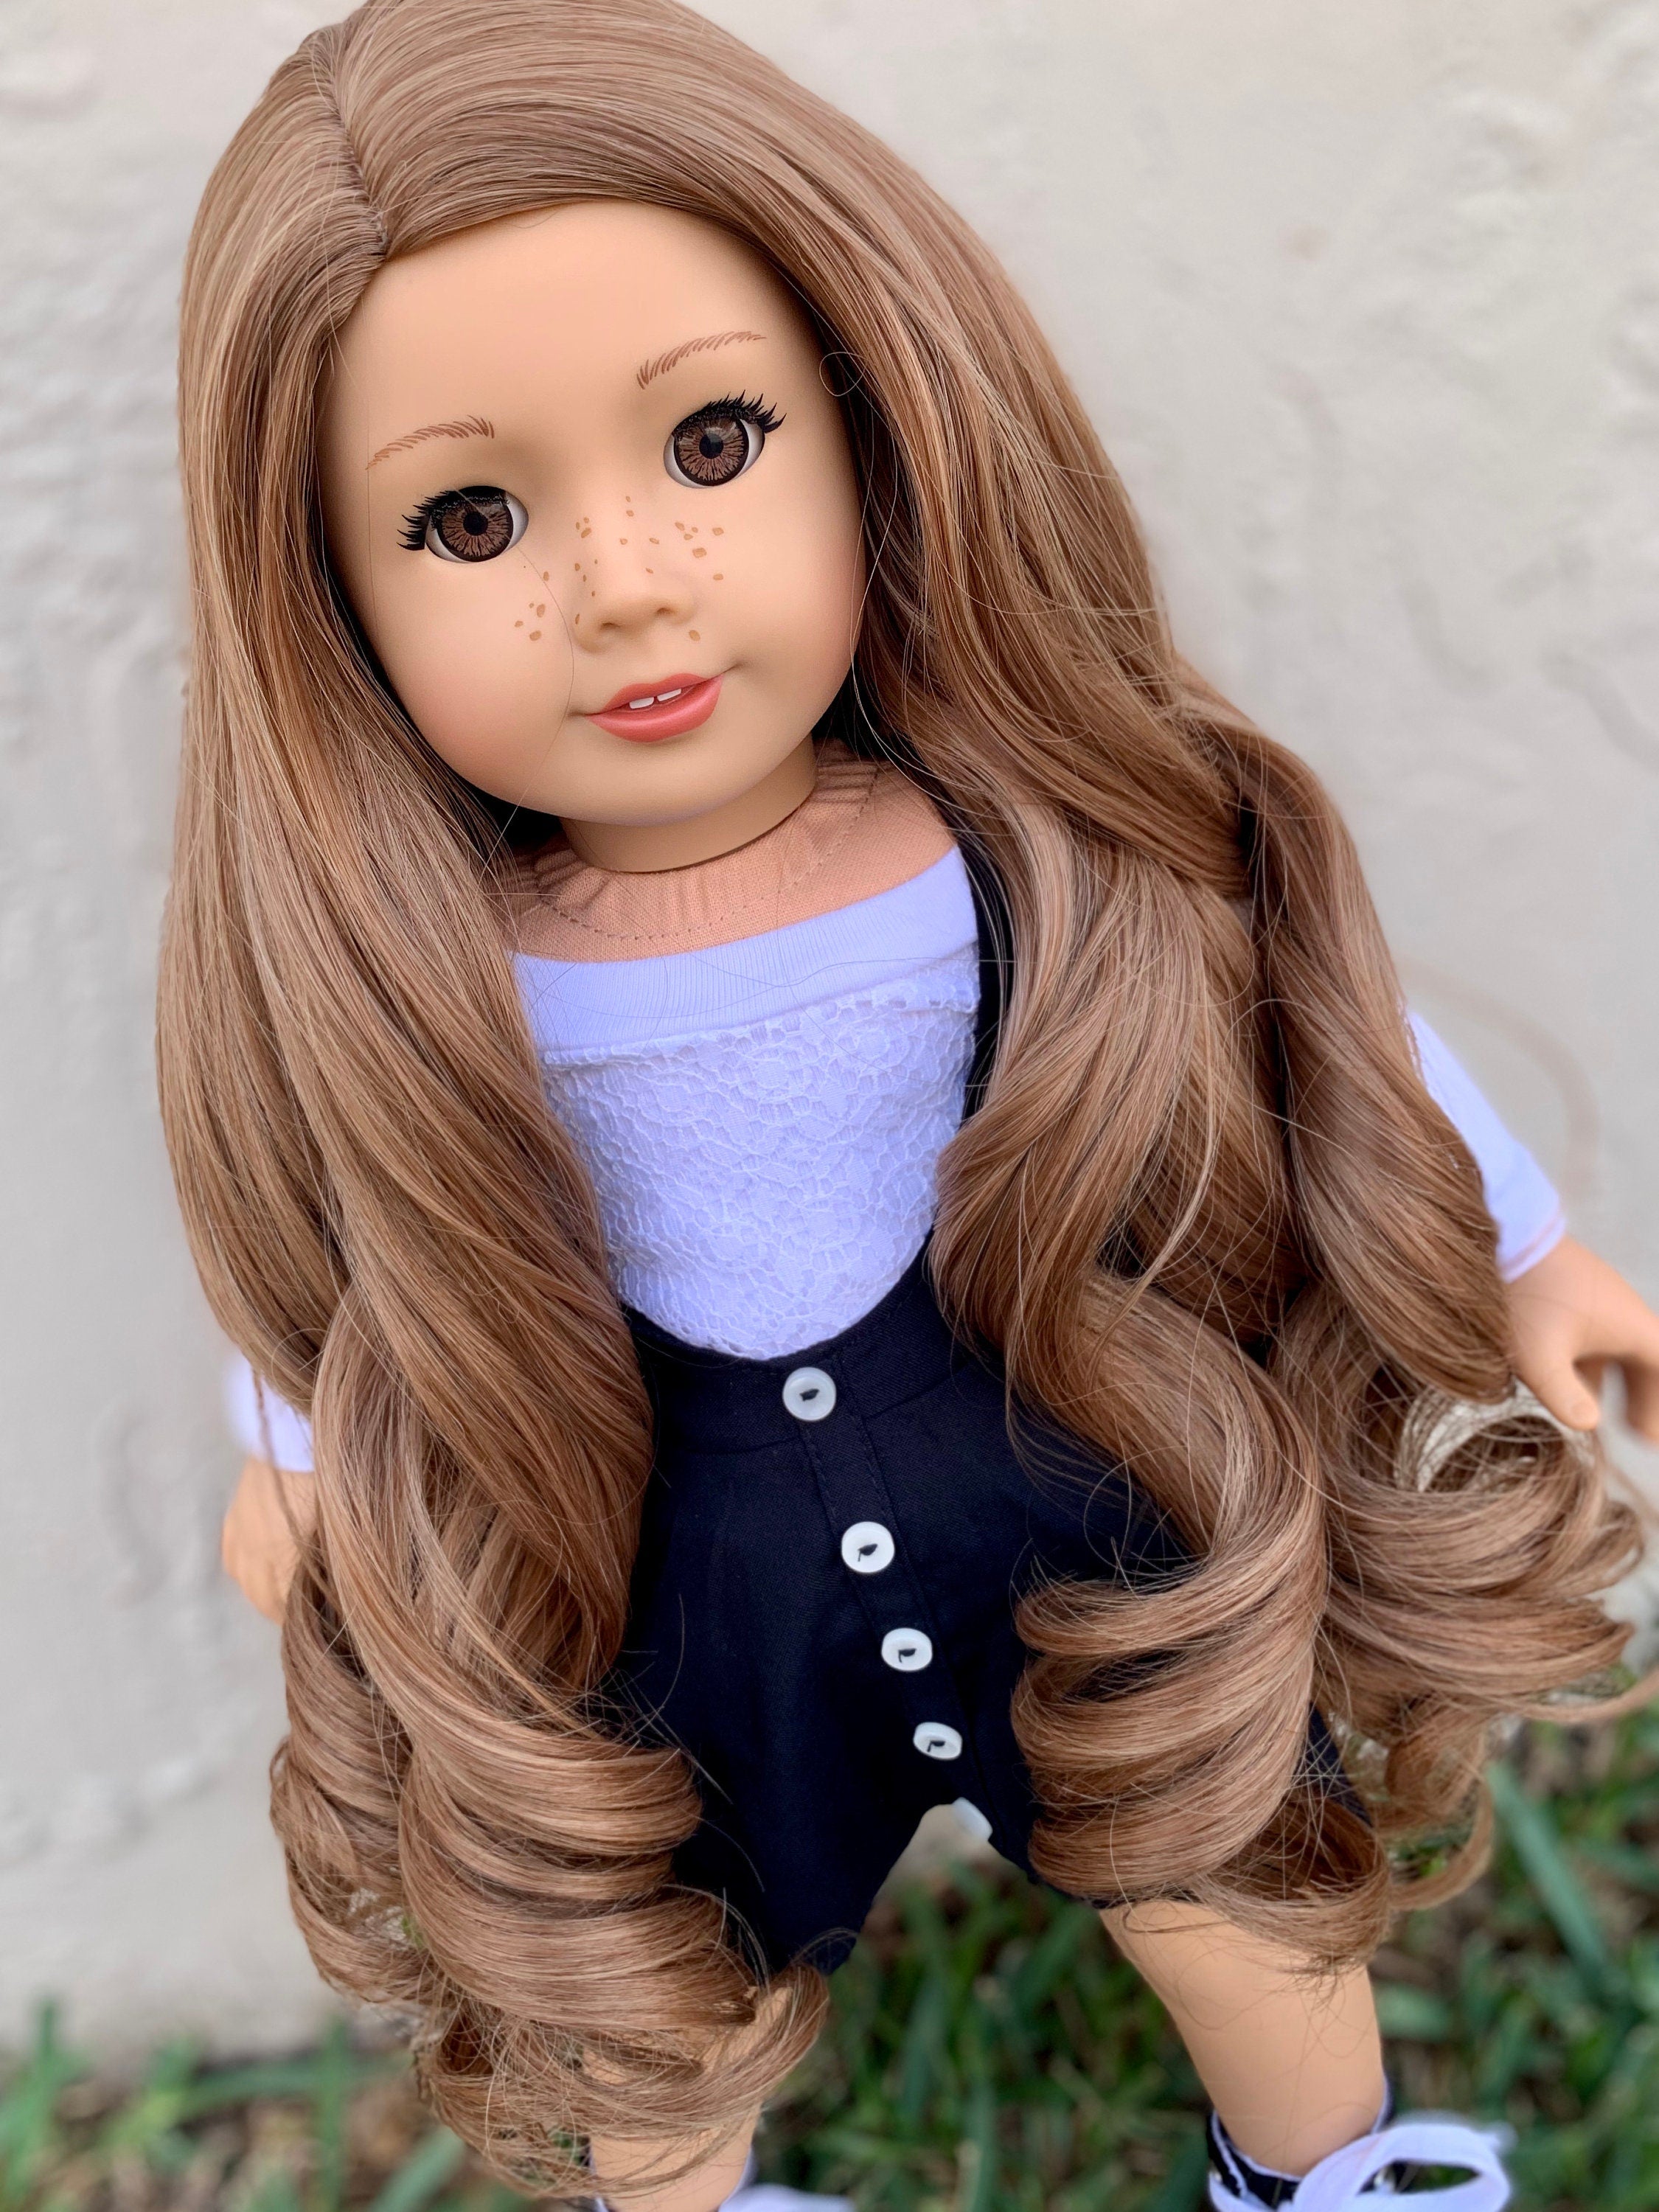 Custom doll wig for 18" American Girl Dolls - Heat Safe - Tangle Resistant - fits 10-11" head size of 18" dolls OG Blythe BJD Gotz Princess